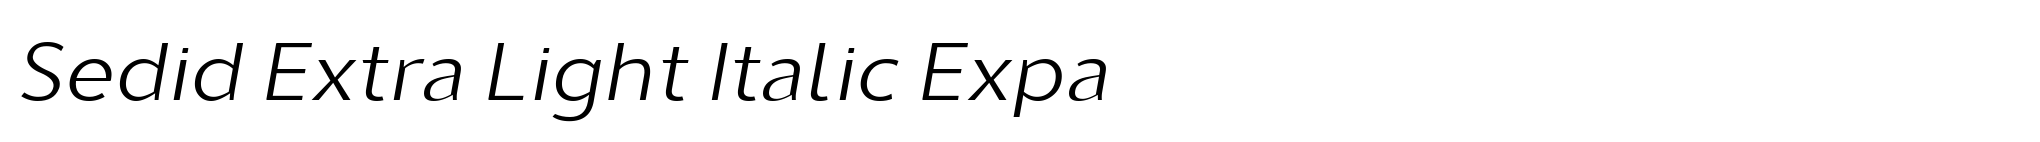 Sedid Extra Light Italic Expa image